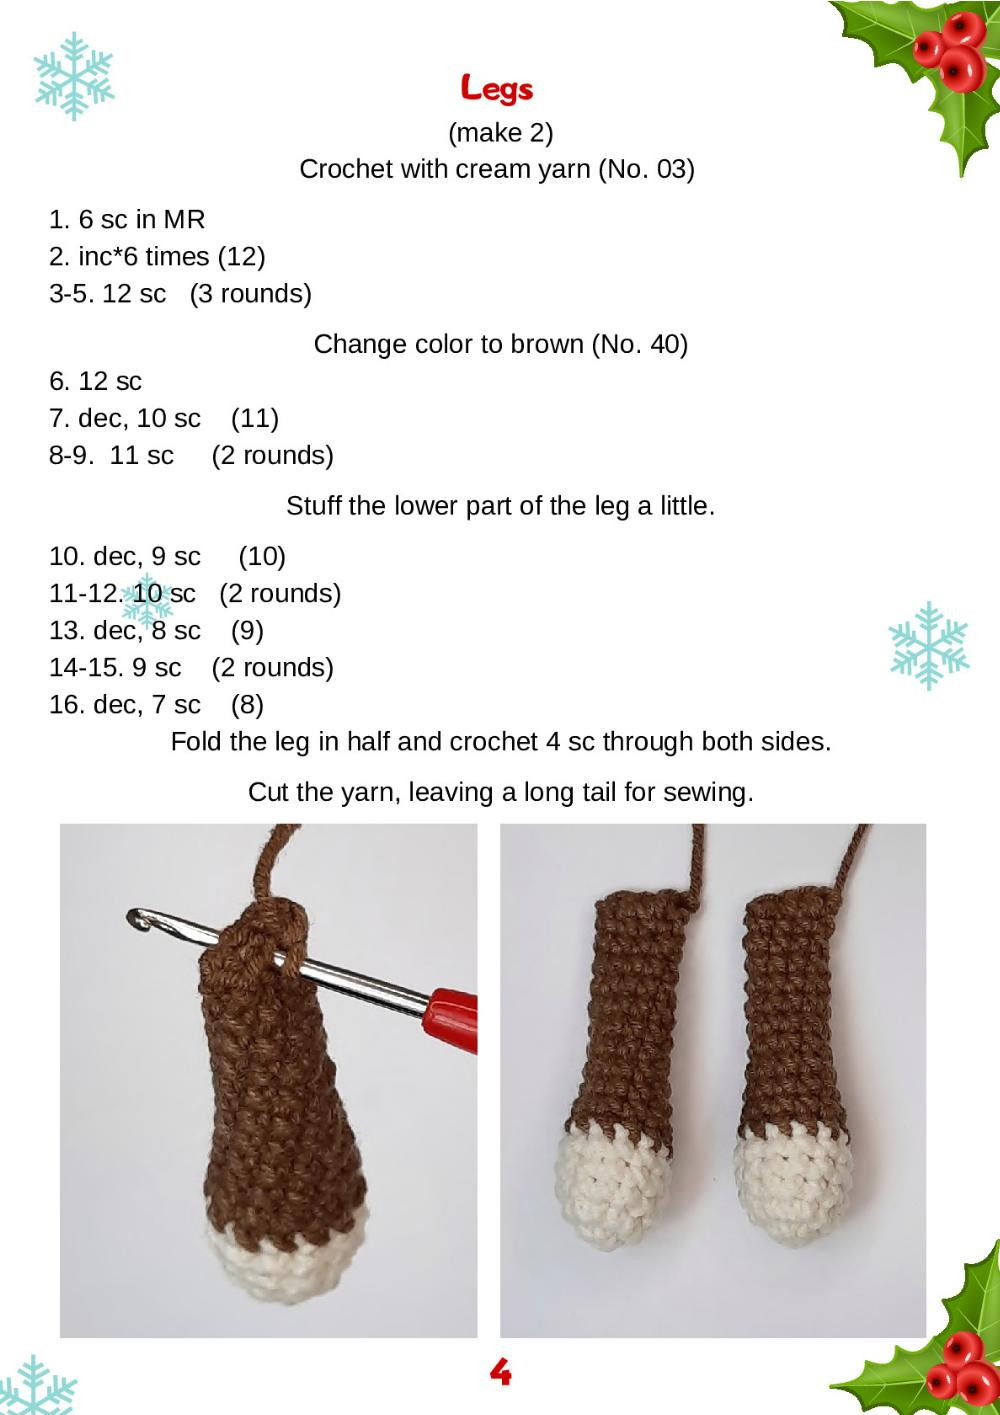 Reindeer Planter Pot crochet pattern